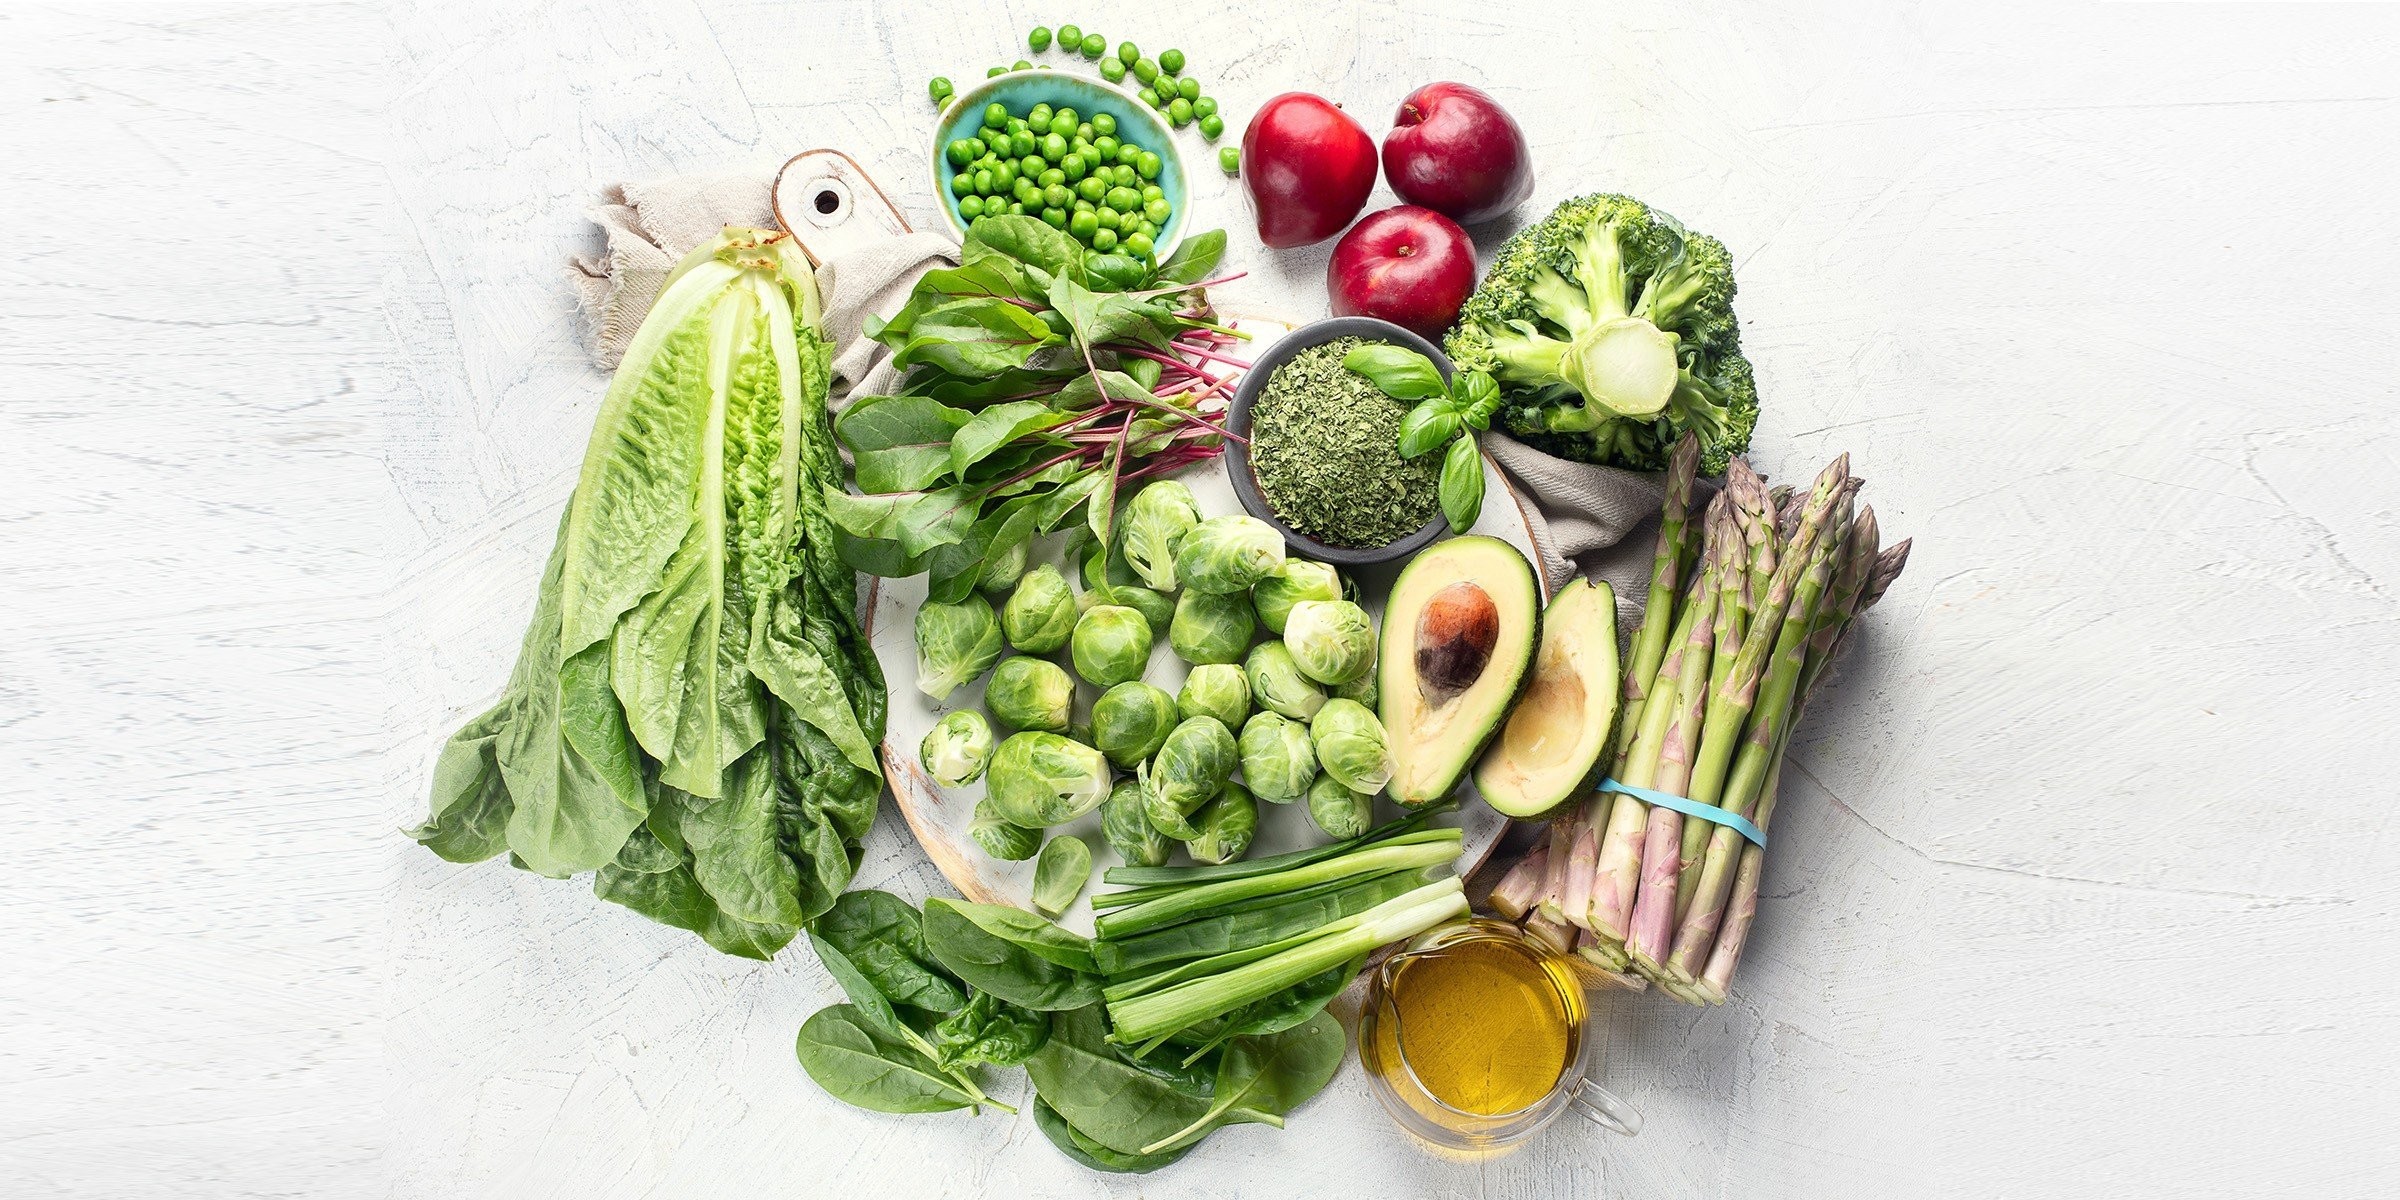 K Vitamini Hangi Besinlerde Bulunur? En Çok Hangi Yiyecek Ve Gıdalarda K Vitamini Var? K Vitamini İçeren Sebze Ve Meyveler cover